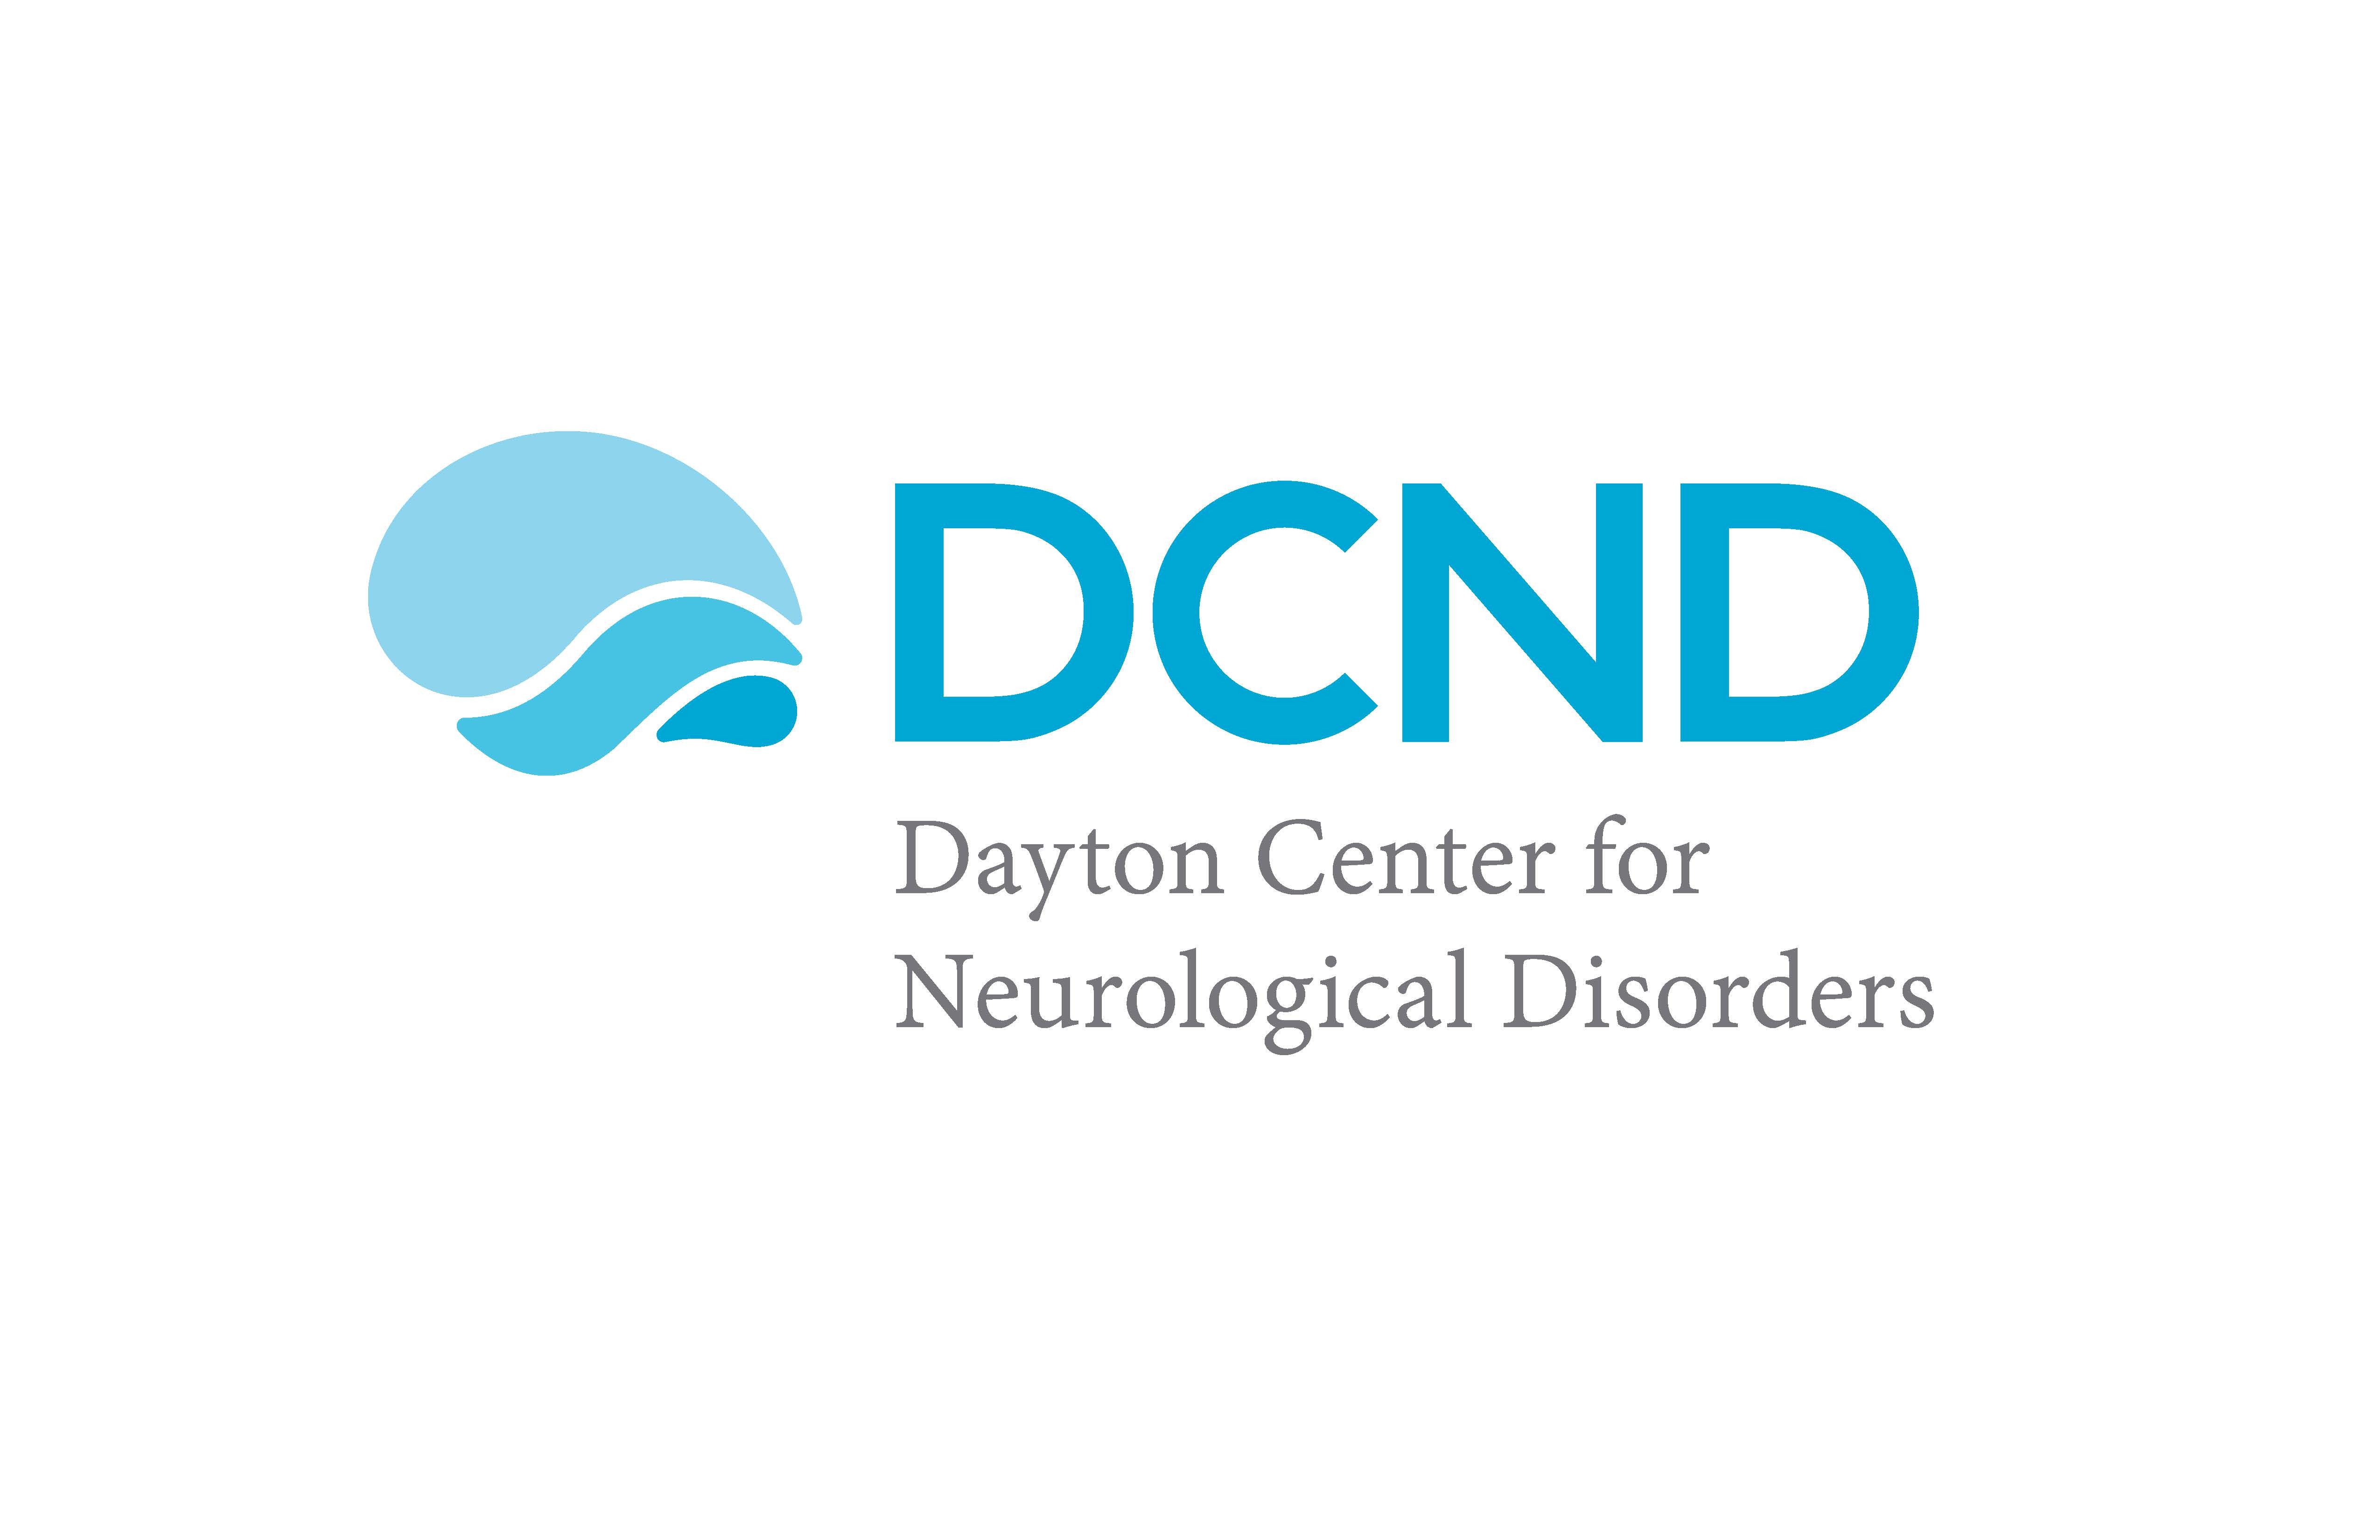 Dayton Center for Neurological Disorders | LinkedIn